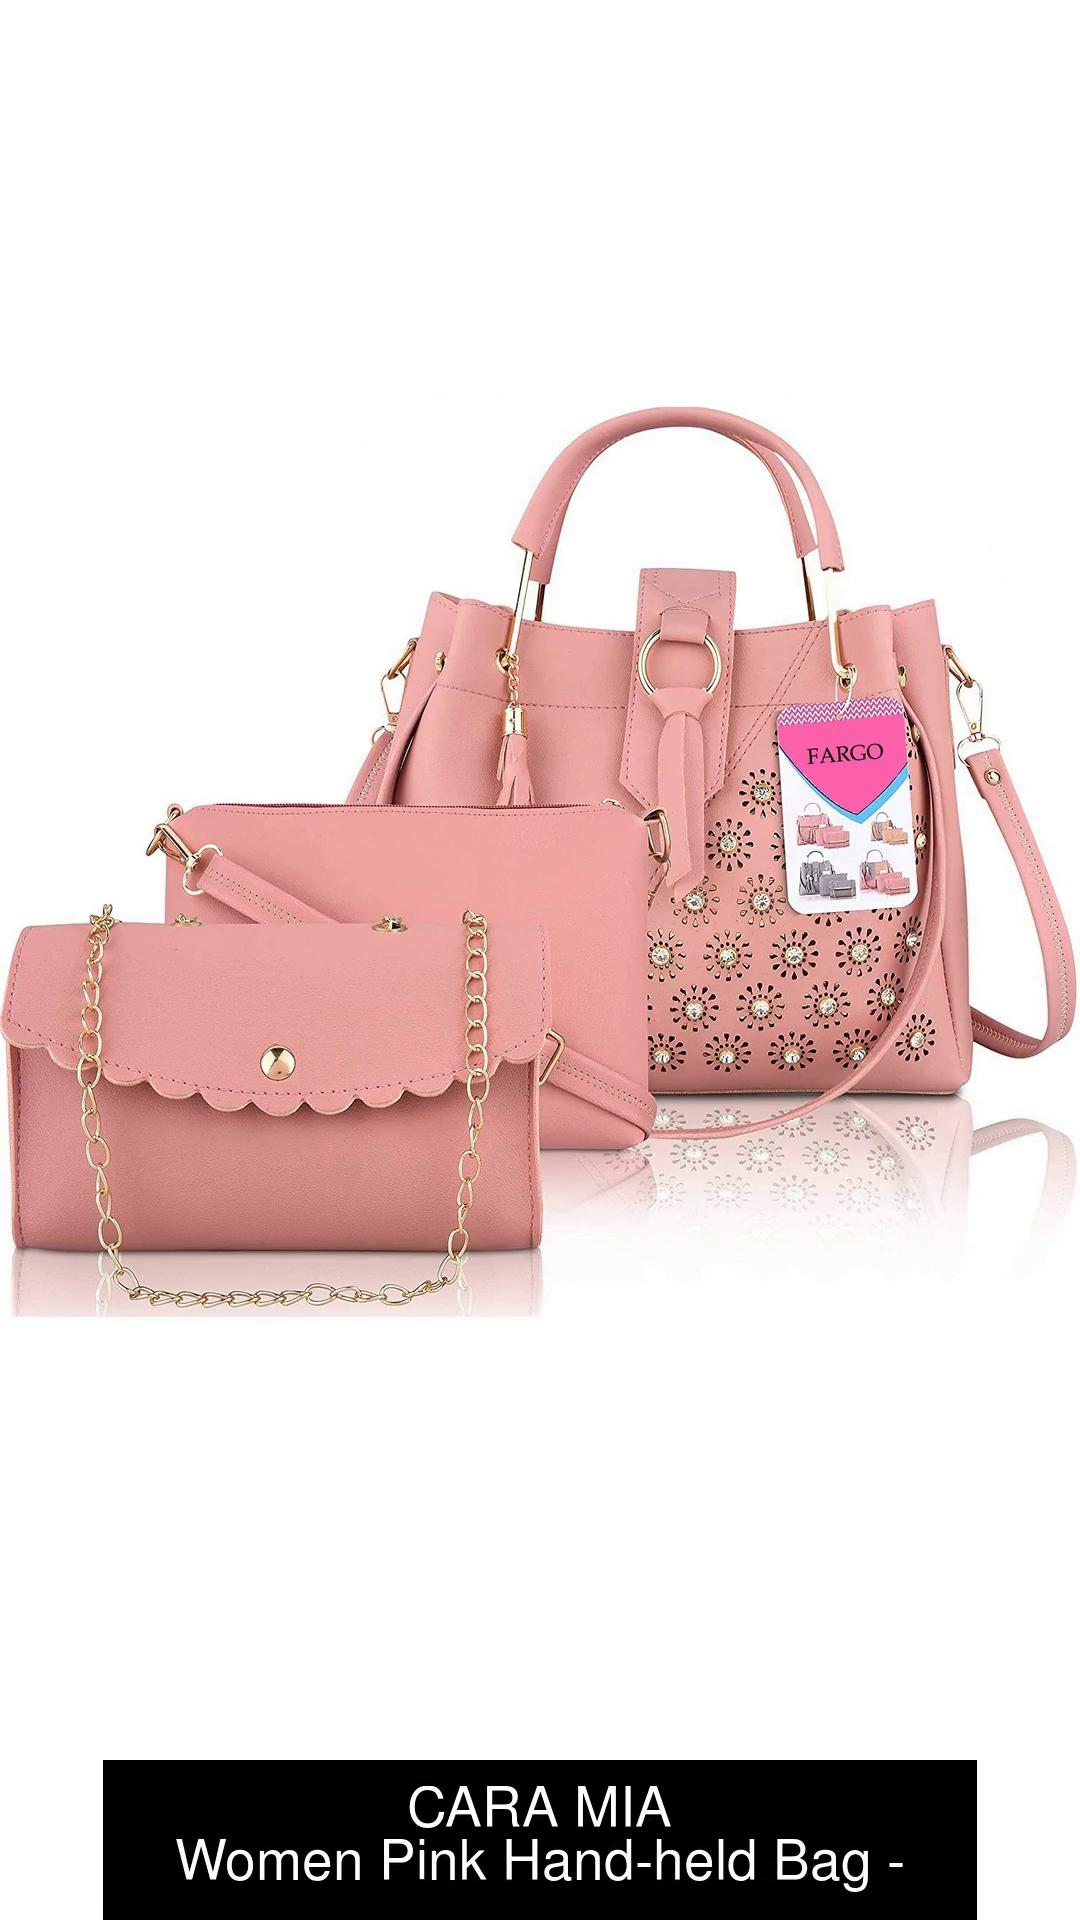 Buy Cara Mia Women Pink Handheld Bag Pink Online  Best Price in India   Flipkartcom